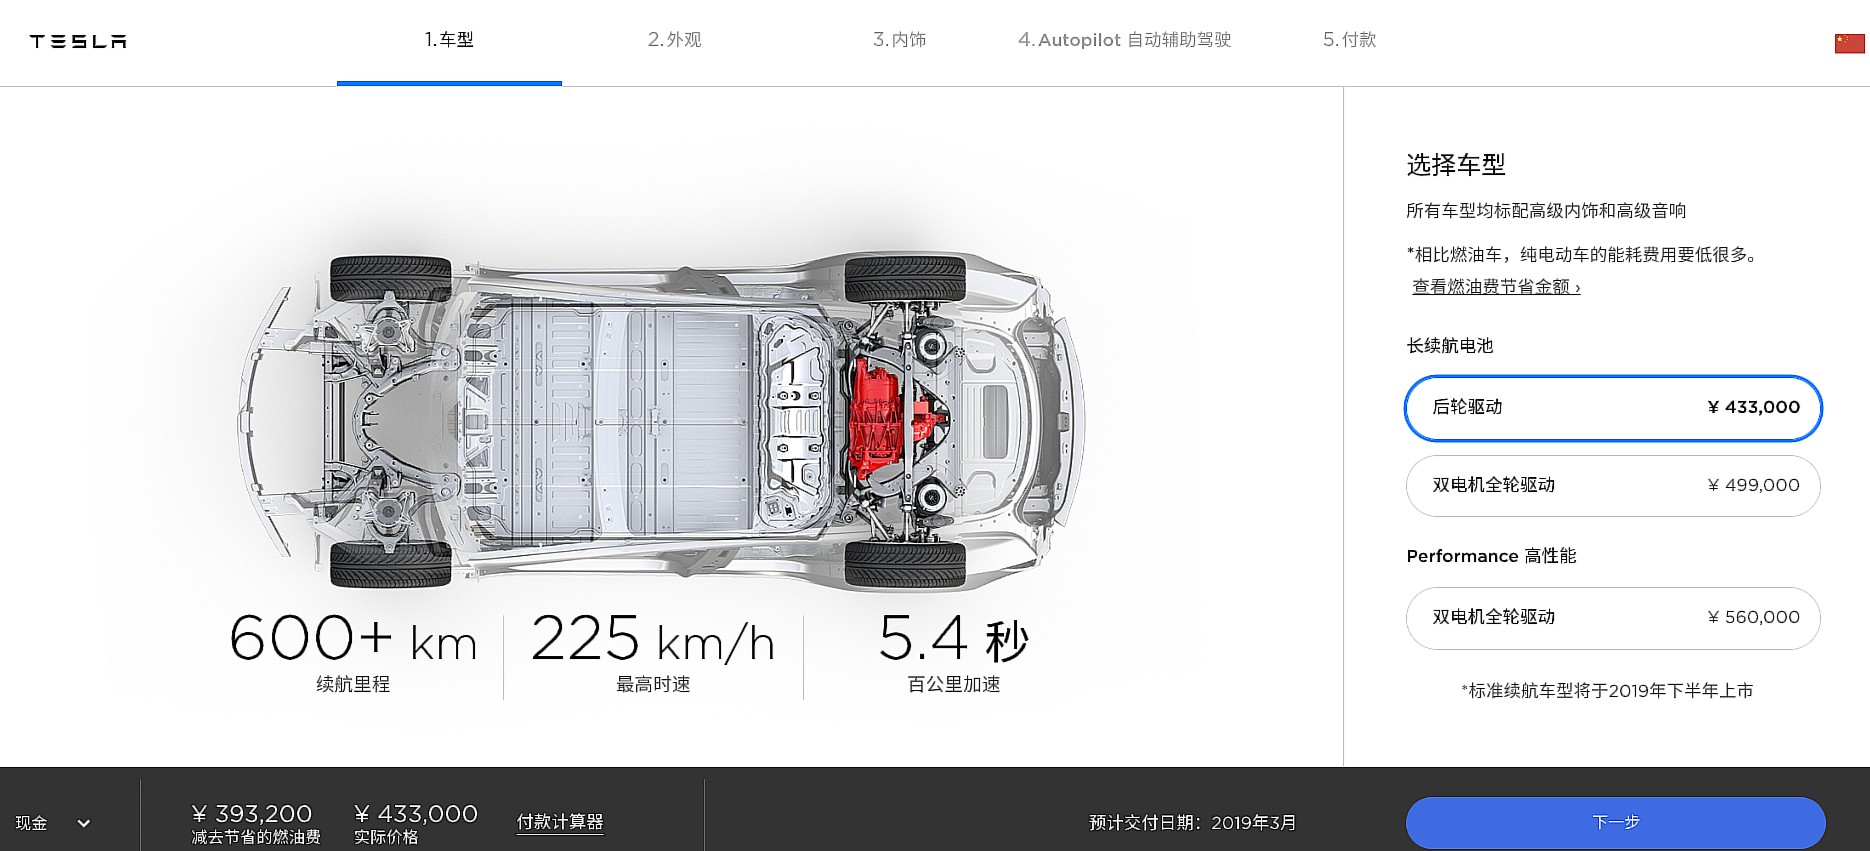 Tesla’s original Model 3 Long Range RWD version gets offered in China